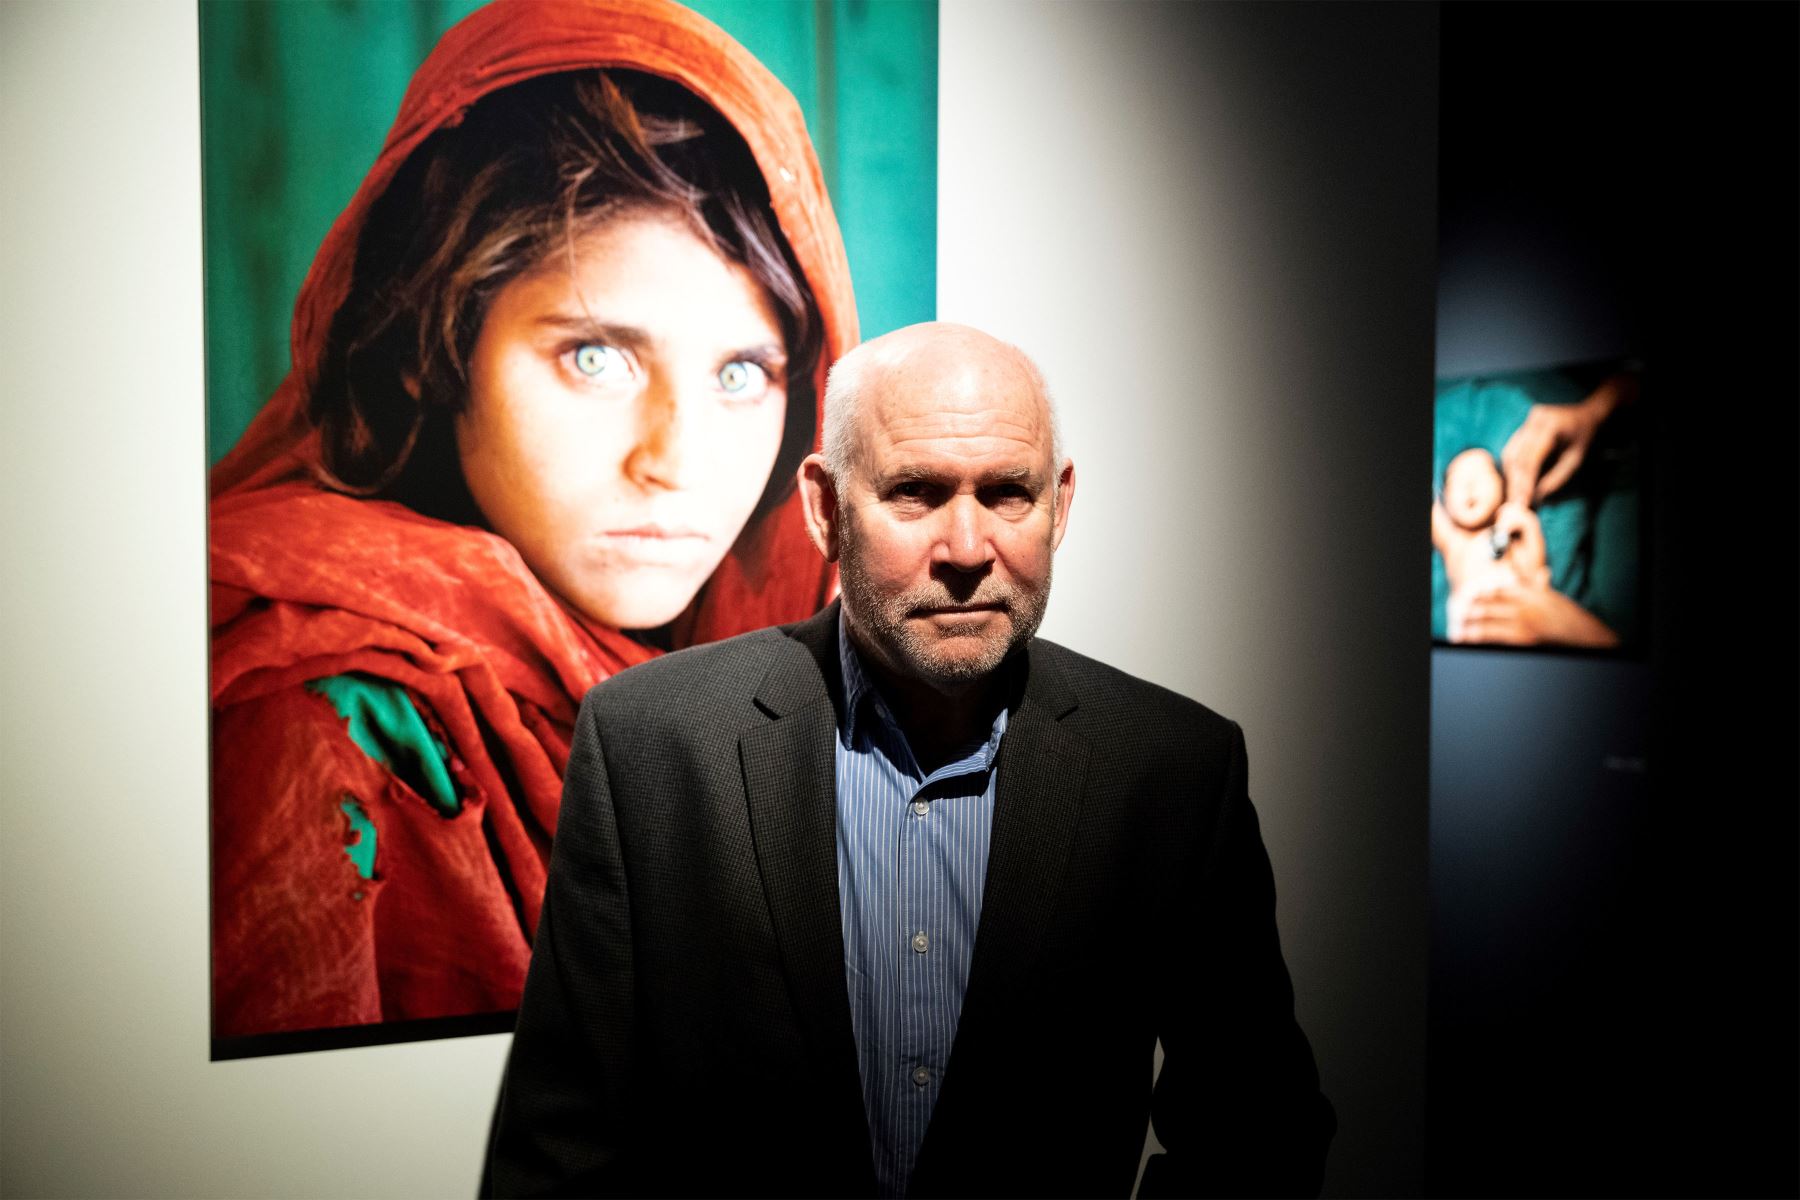 El fotógrafo estadounidense Steve McCurry posa junto a su legendario retrato de la niña afgana Sharbat Gula, que fue portada de National Geographic, durante la presentación de una exposición retrospectiva de su carrera, titulada "Icons".
Foto: EFE